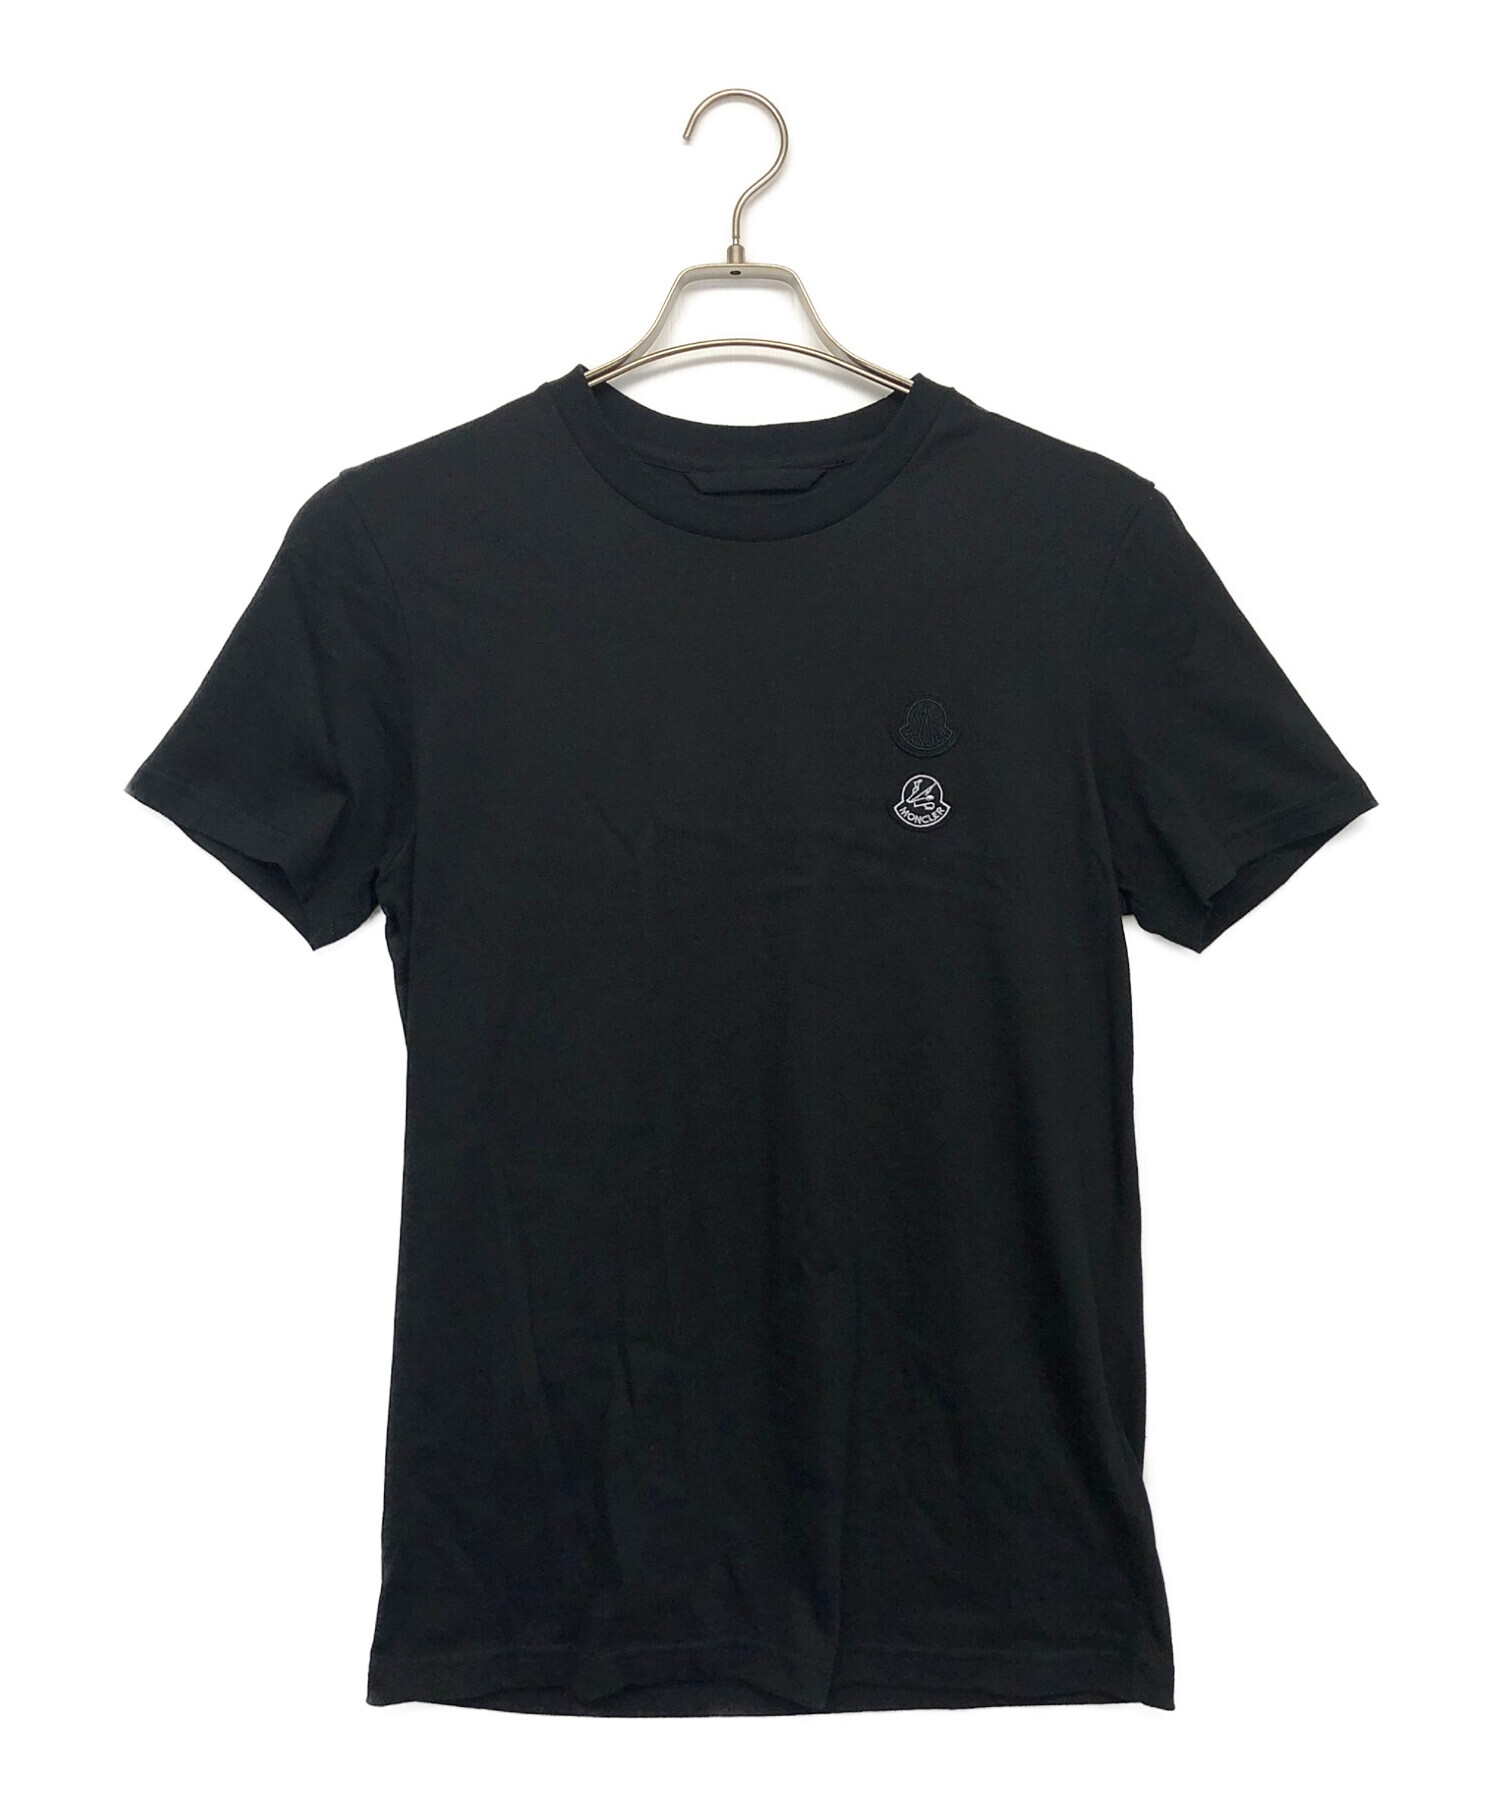 正規品 モンクレール Tシャツ サイズM - メンズ